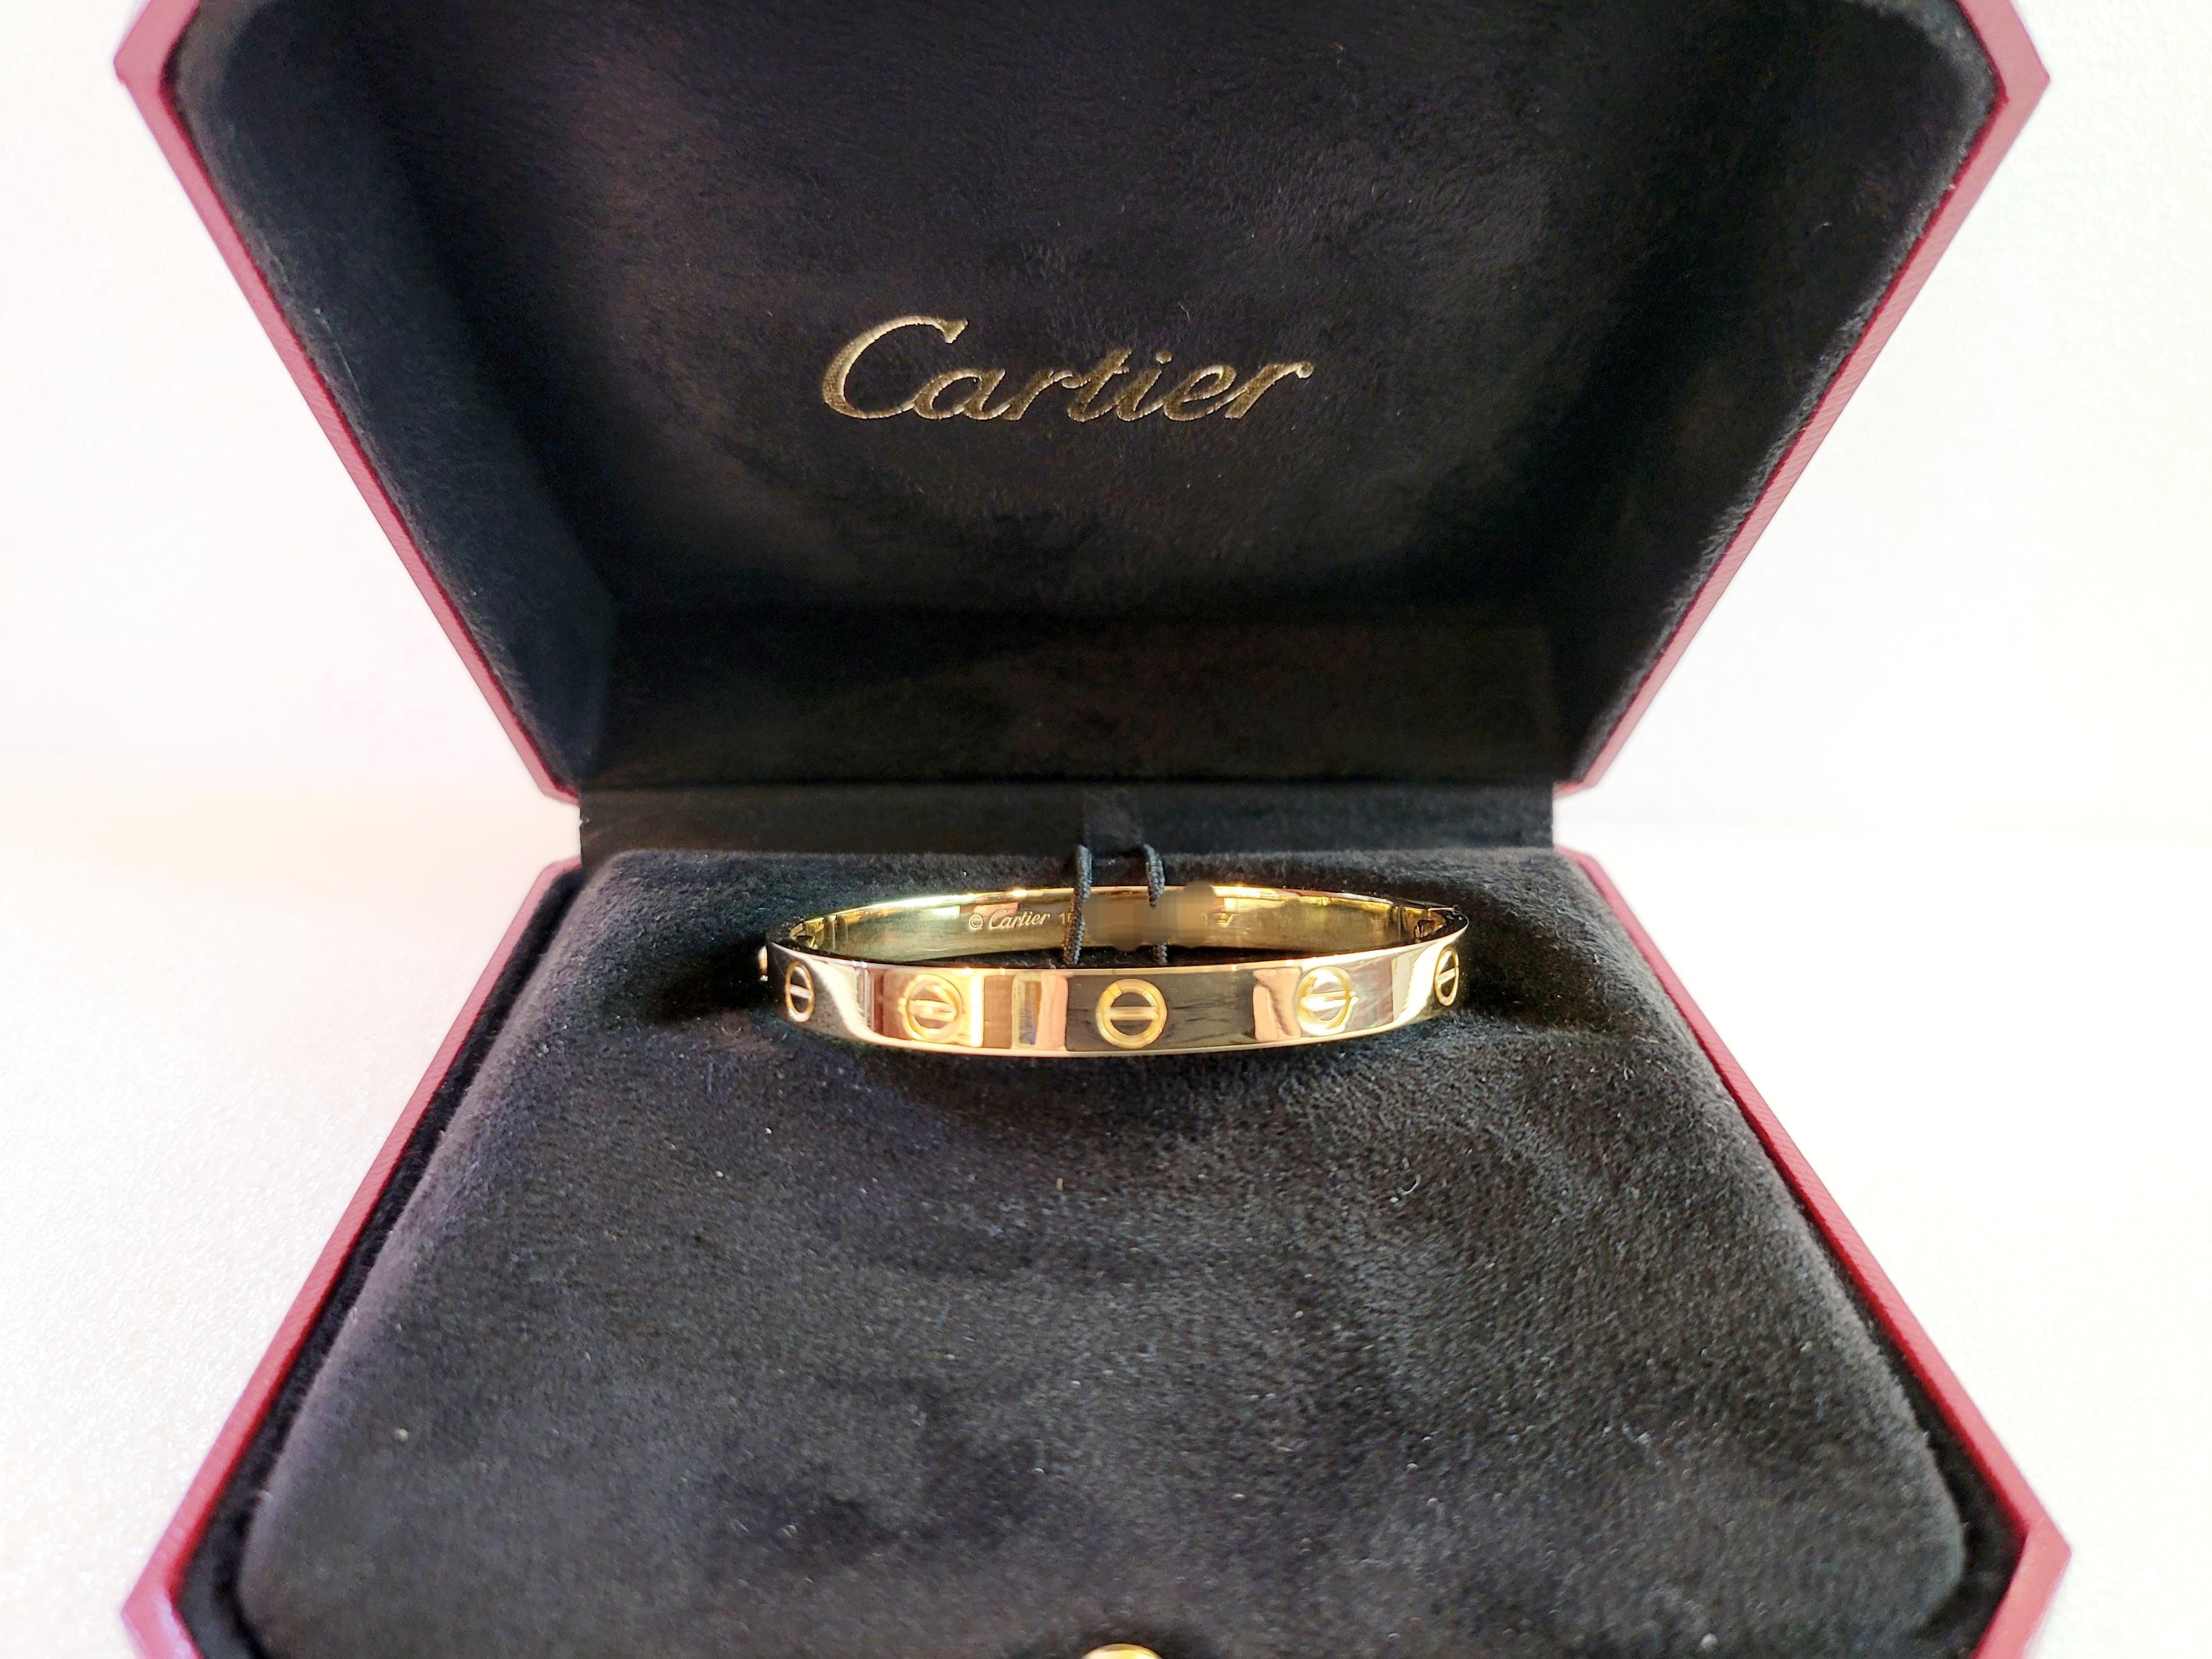 Marke Cartier 
MATERIAL 18K Gelbgold 
Typ Liebesarmband 
Armbänder Größe 16
Breite des Armbands 6,1 mm
Armband Gewicht 29gr
Neuwertiger Zustand, wie neu
Wird mit Schraubendreher geliefert 
Inklusive Box ohne Papier 
Verkaufspreis 7,350 USD
Anlässe: